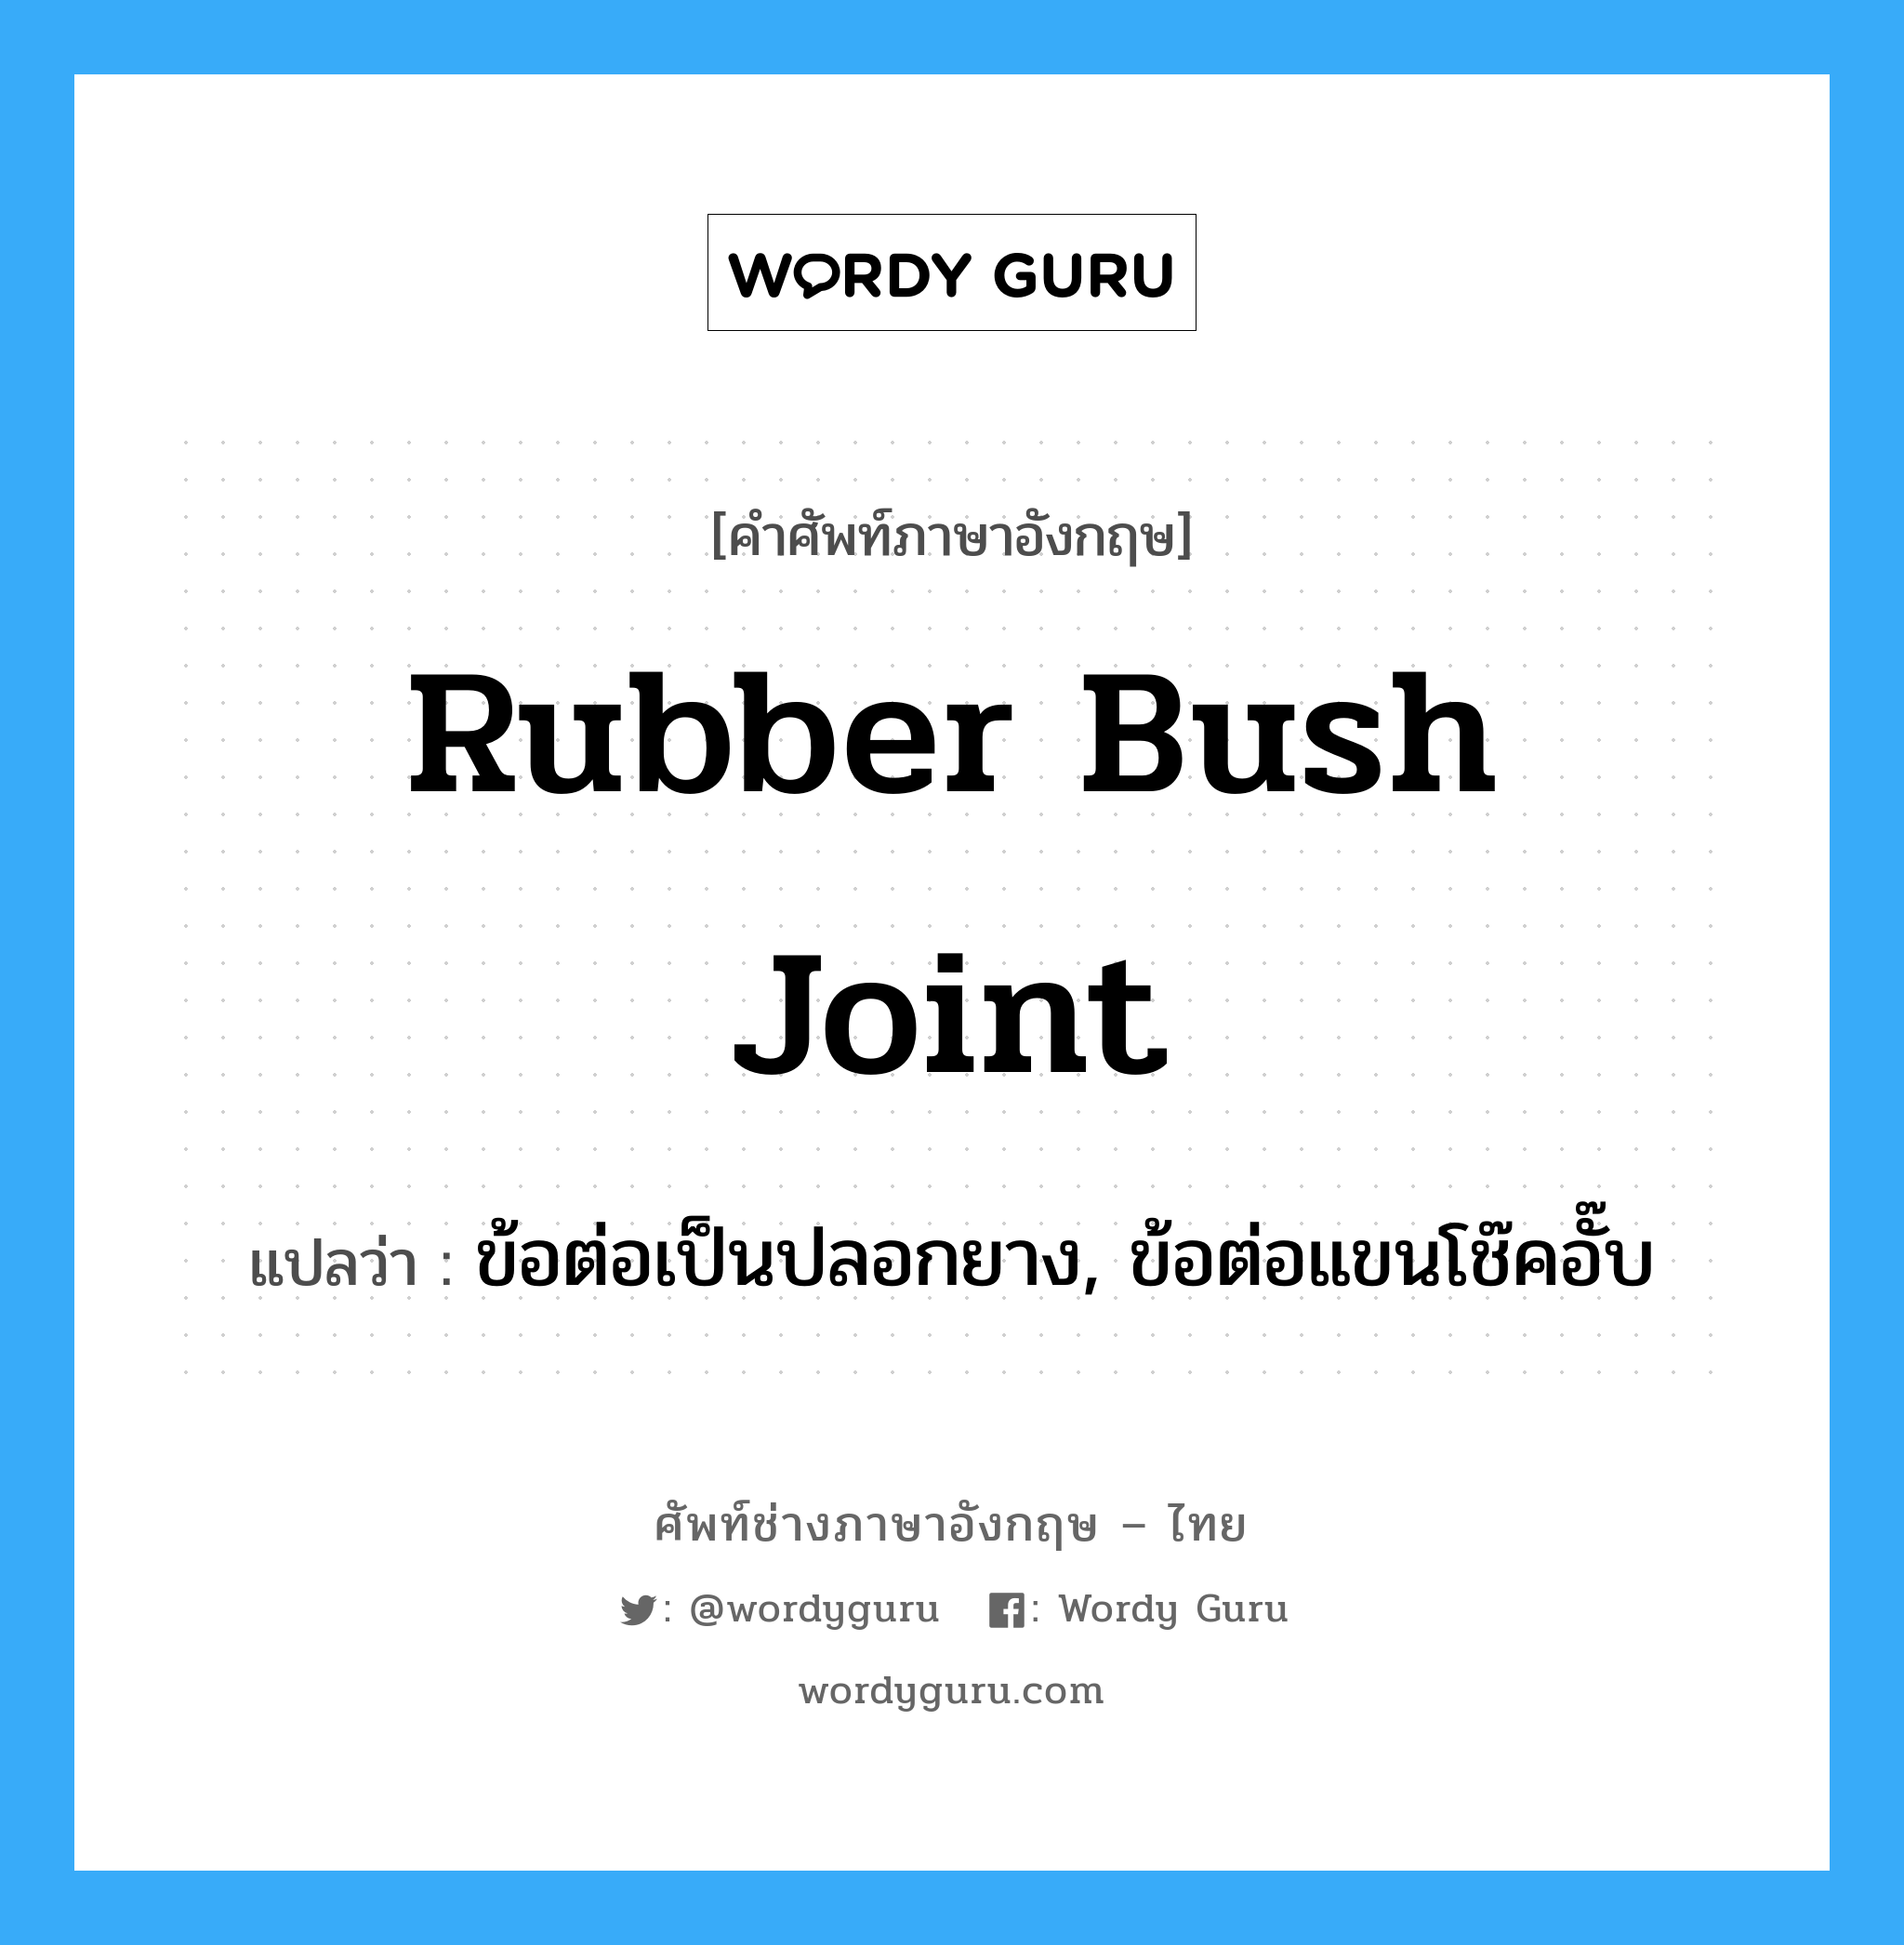 rubber bush joint แปลว่า?, คำศัพท์ช่างภาษาอังกฤษ - ไทย rubber bush joint คำศัพท์ภาษาอังกฤษ rubber bush joint แปลว่า ข้อต่อเป็นปลอกยาง, ข้อต่อแขนโช๊คอั๊บ